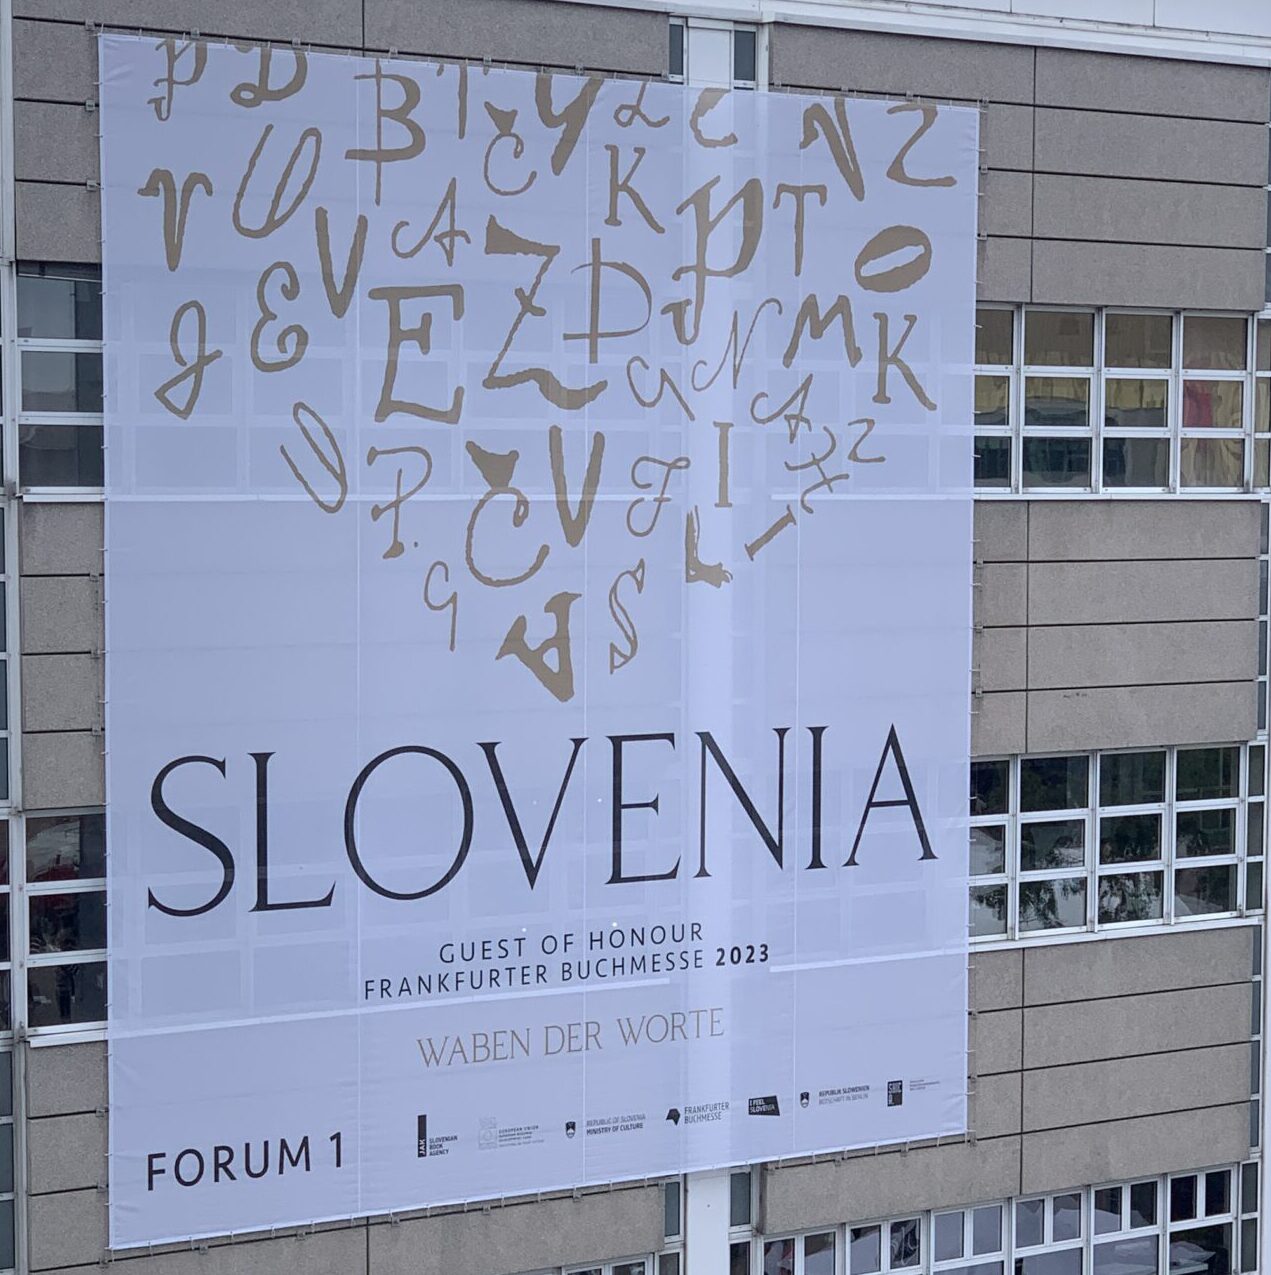 Frankfurter Buchmesse 2023: Banner vom Gastland mit den Worten: Slovenia, Guest of Honour, Frankfurter Buchmesse 2023, Waben der Worte, Forum 1